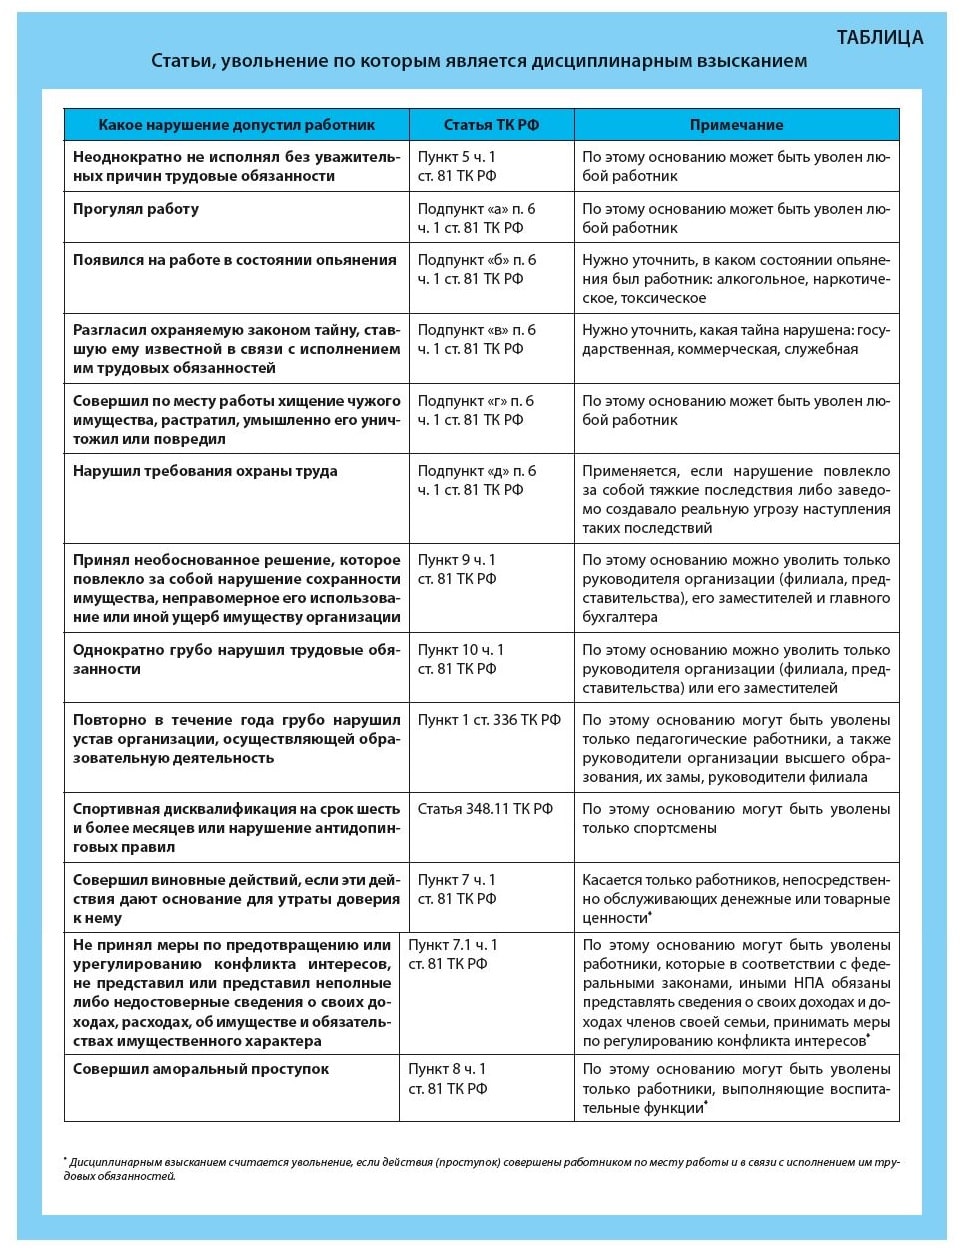 Статьи ТК РФ, увольнение по которым является дисциплинарным взысканием